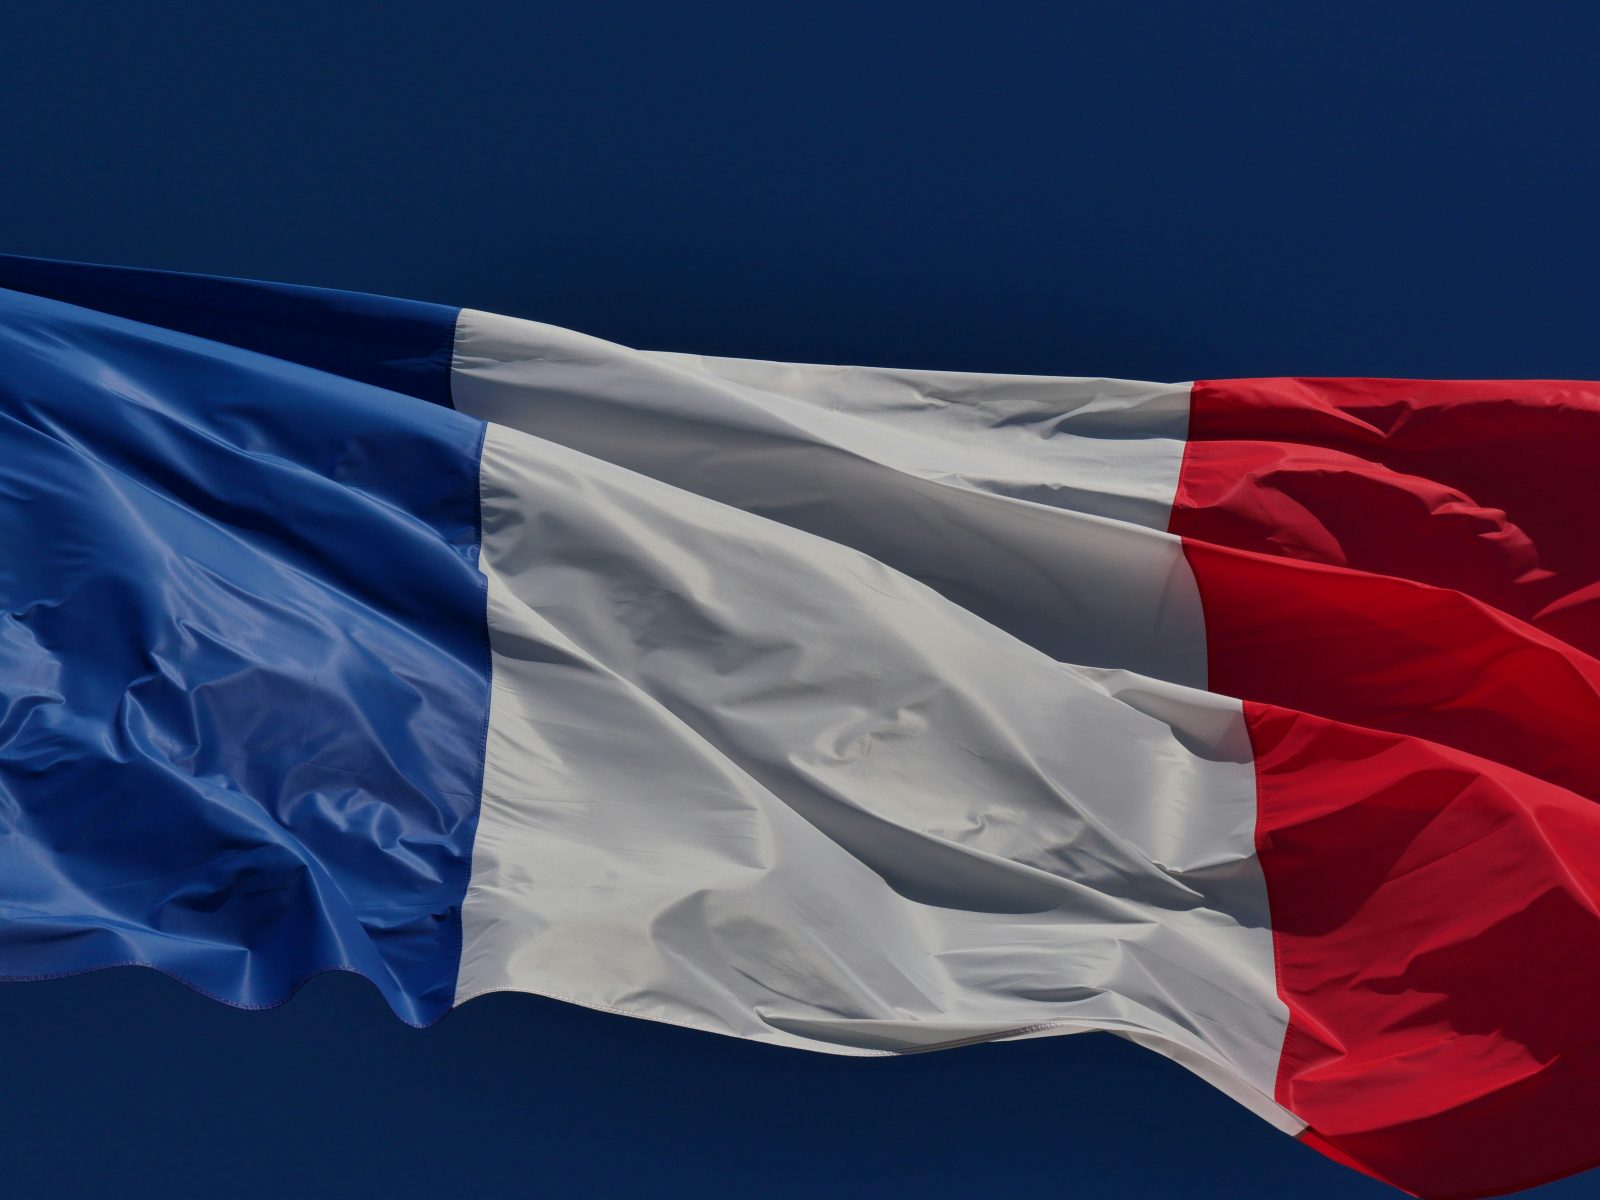 Η Alice & Bob είναι μία από τις 5 γαλλικές εταιρείες που επιλέχθηκαν για το πρόγραμμα PROQCIMA που εστιάζει στη γαλλική κυβερνοασφάλεια.